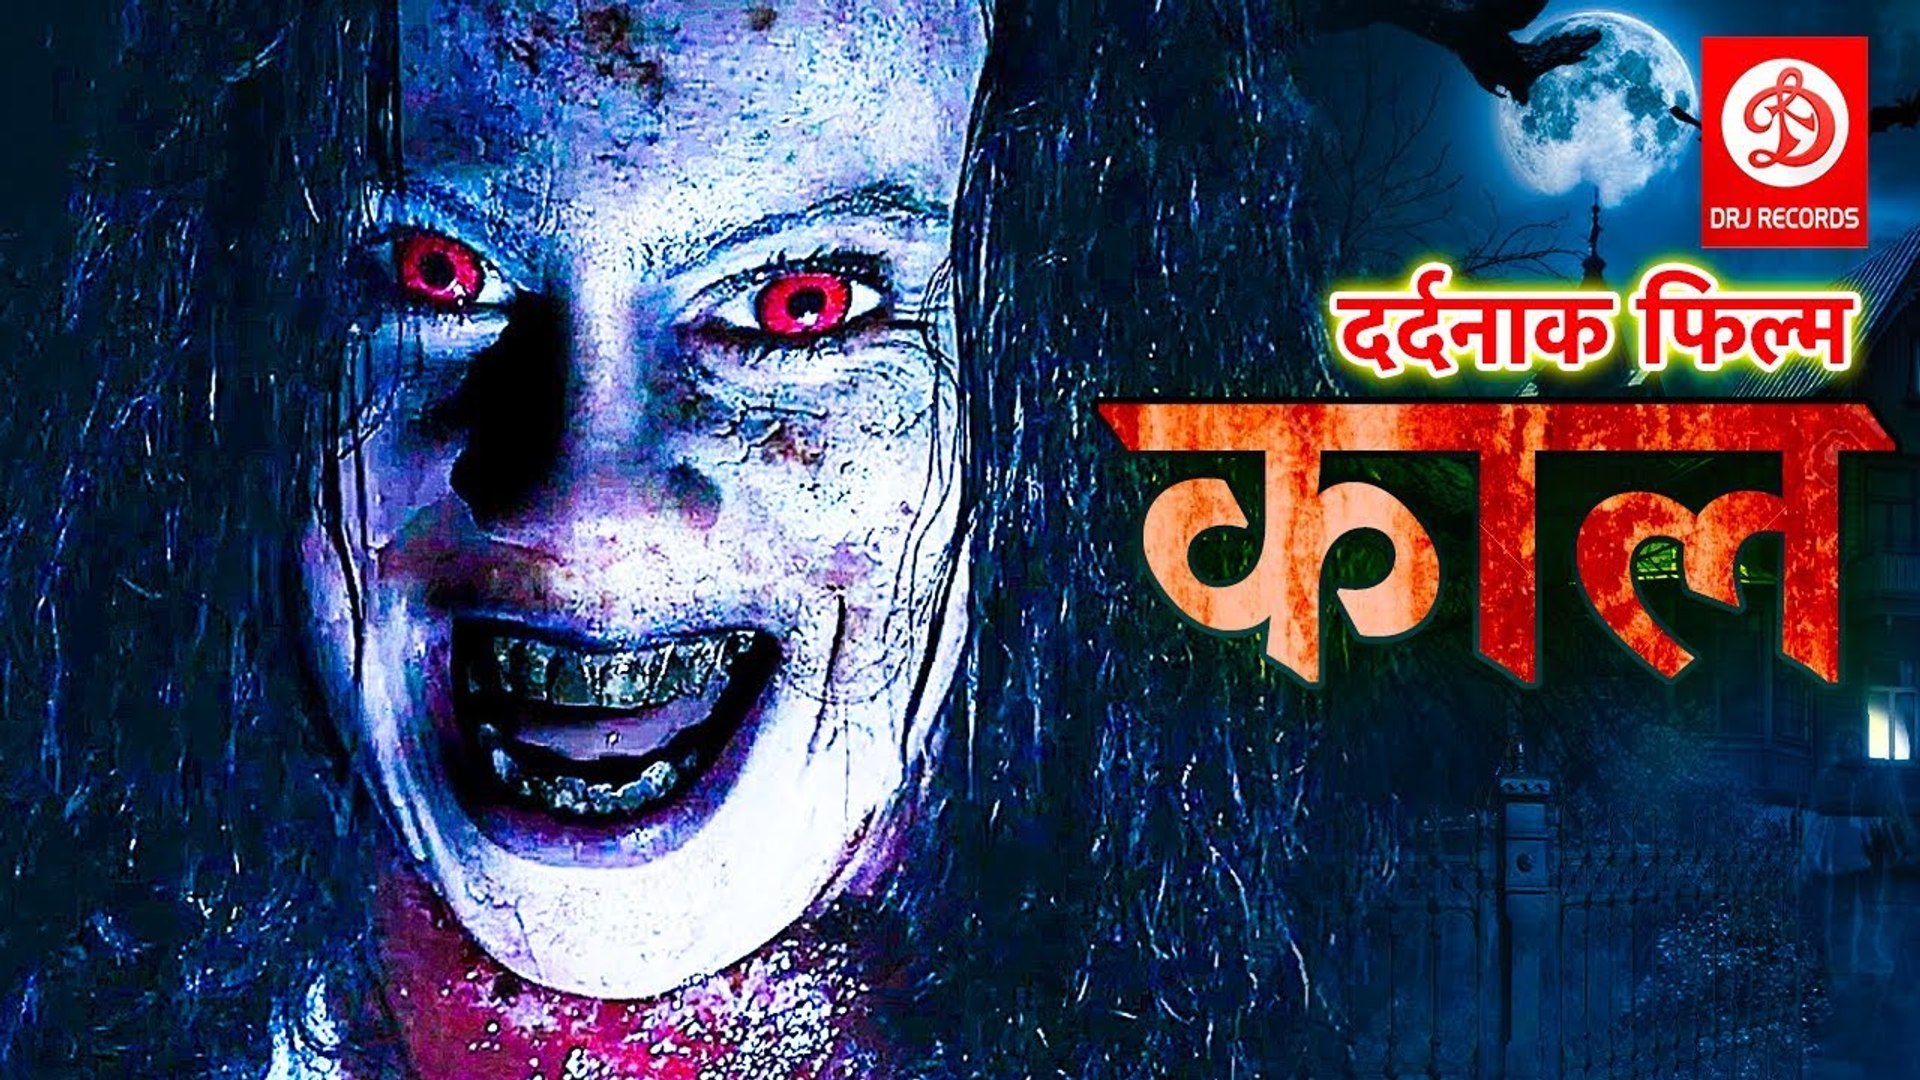 à¤•à¤¾à¤² (2019) à¤­à¥‹à¤œà¤ªà¥à¤°à¥€ à¤•à¥€ à¤¸à¤¬à¤¸à¥‡ à¤¡à¤°à¤¾à¤µà¤¨à¥€ à¤«à¤¿à¤²à¥à¤® 2019 | à¤¬à¤šà¥à¤šà¥‡ à¤¦à¥‚à¤° à¤°à¤¹à¥‡ 2019 |  Bhojpuri Horror Movie - video Dailymotion